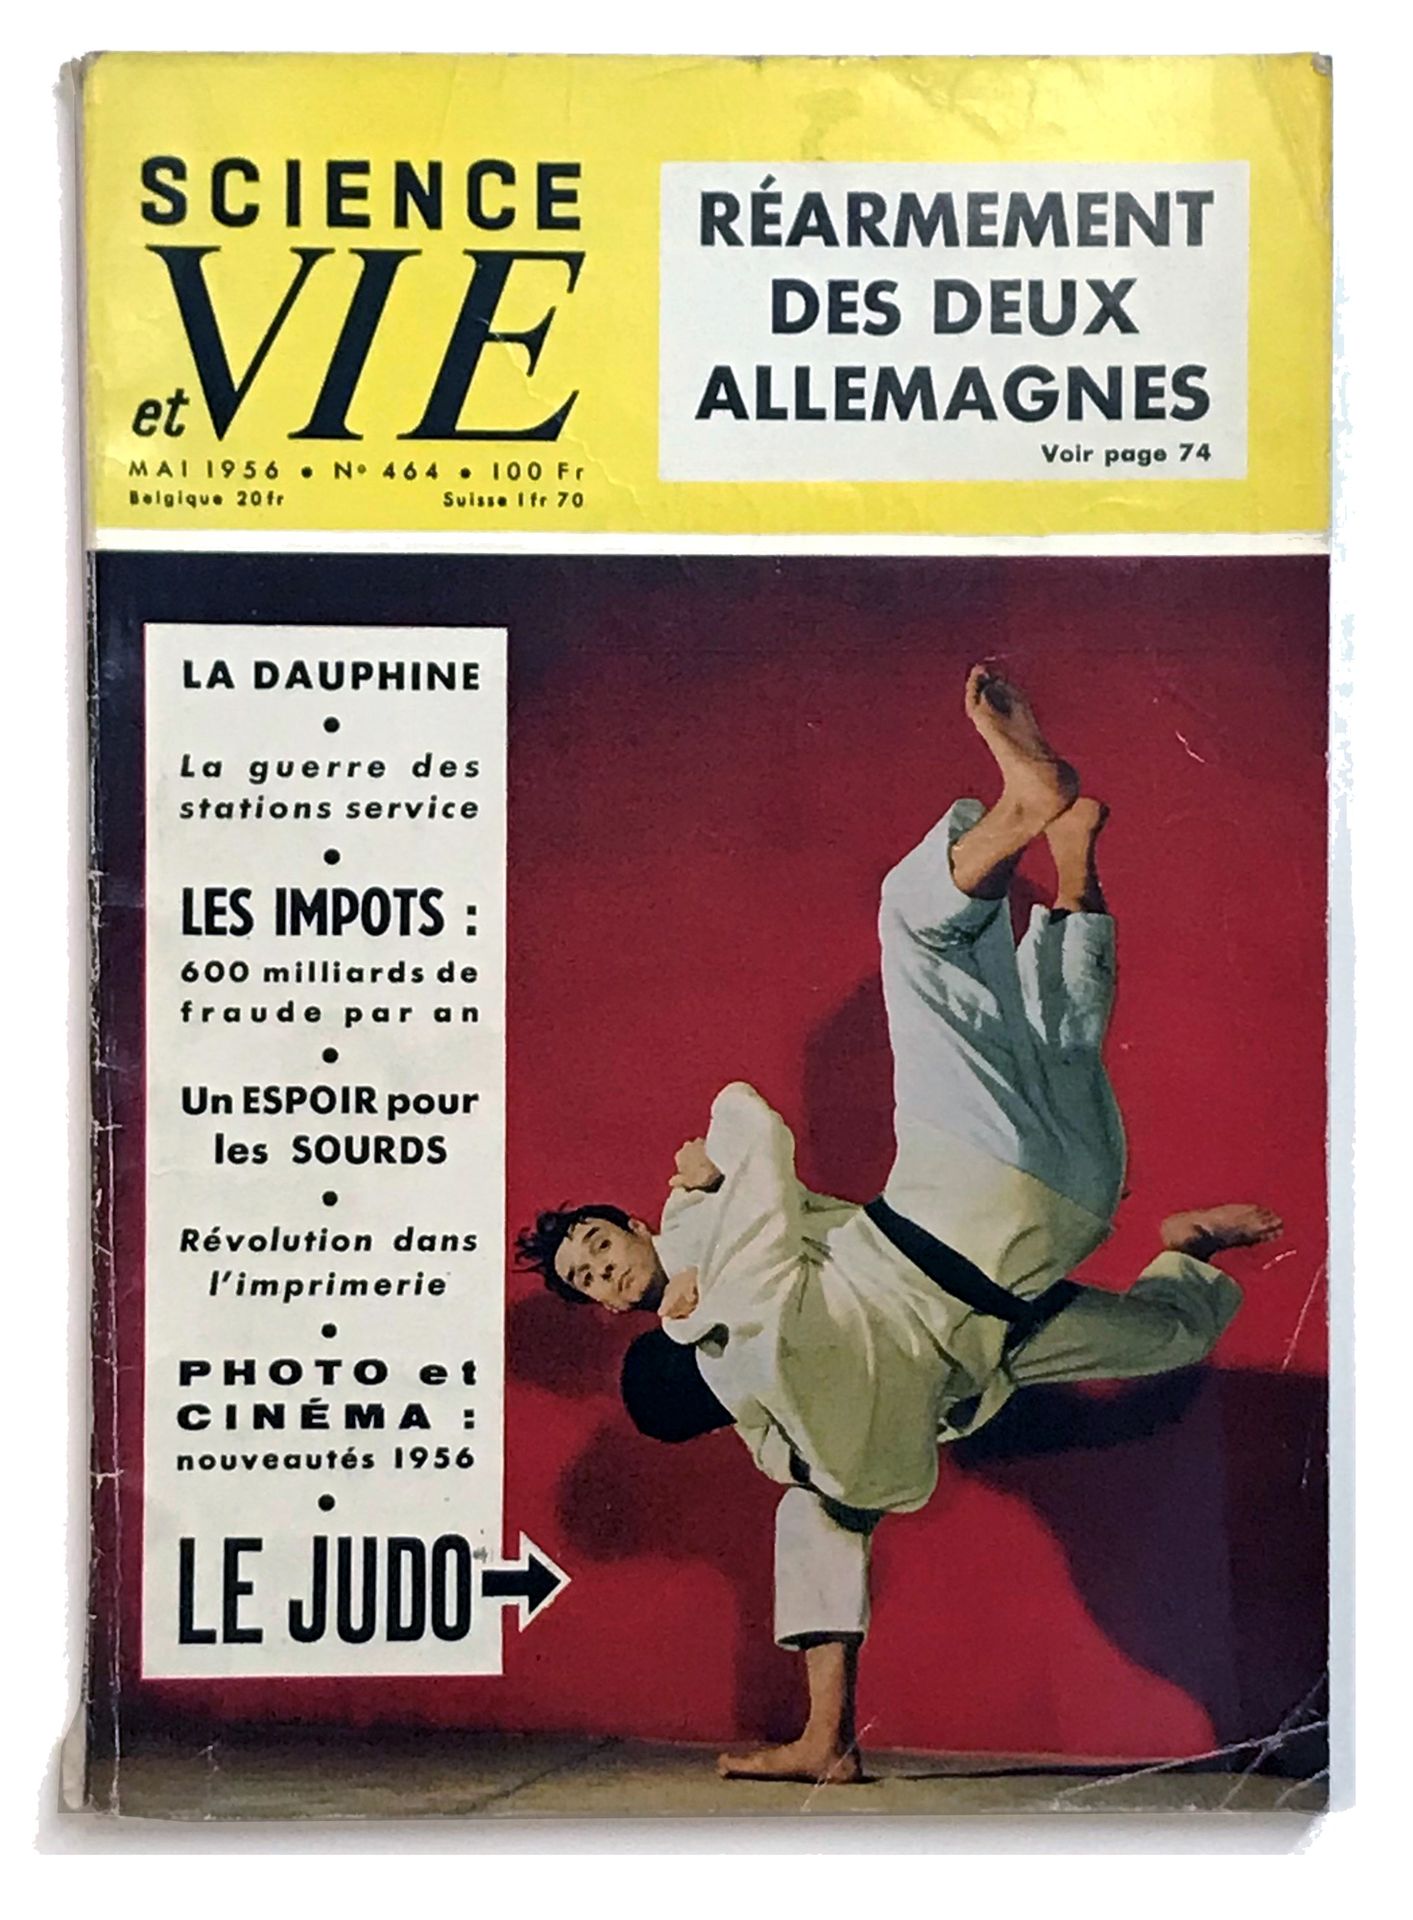 [KLEIN] ANONYME Boda de Yves Klein y Rotraut Uecker, París, 21 de enero de 1962
&hellip;